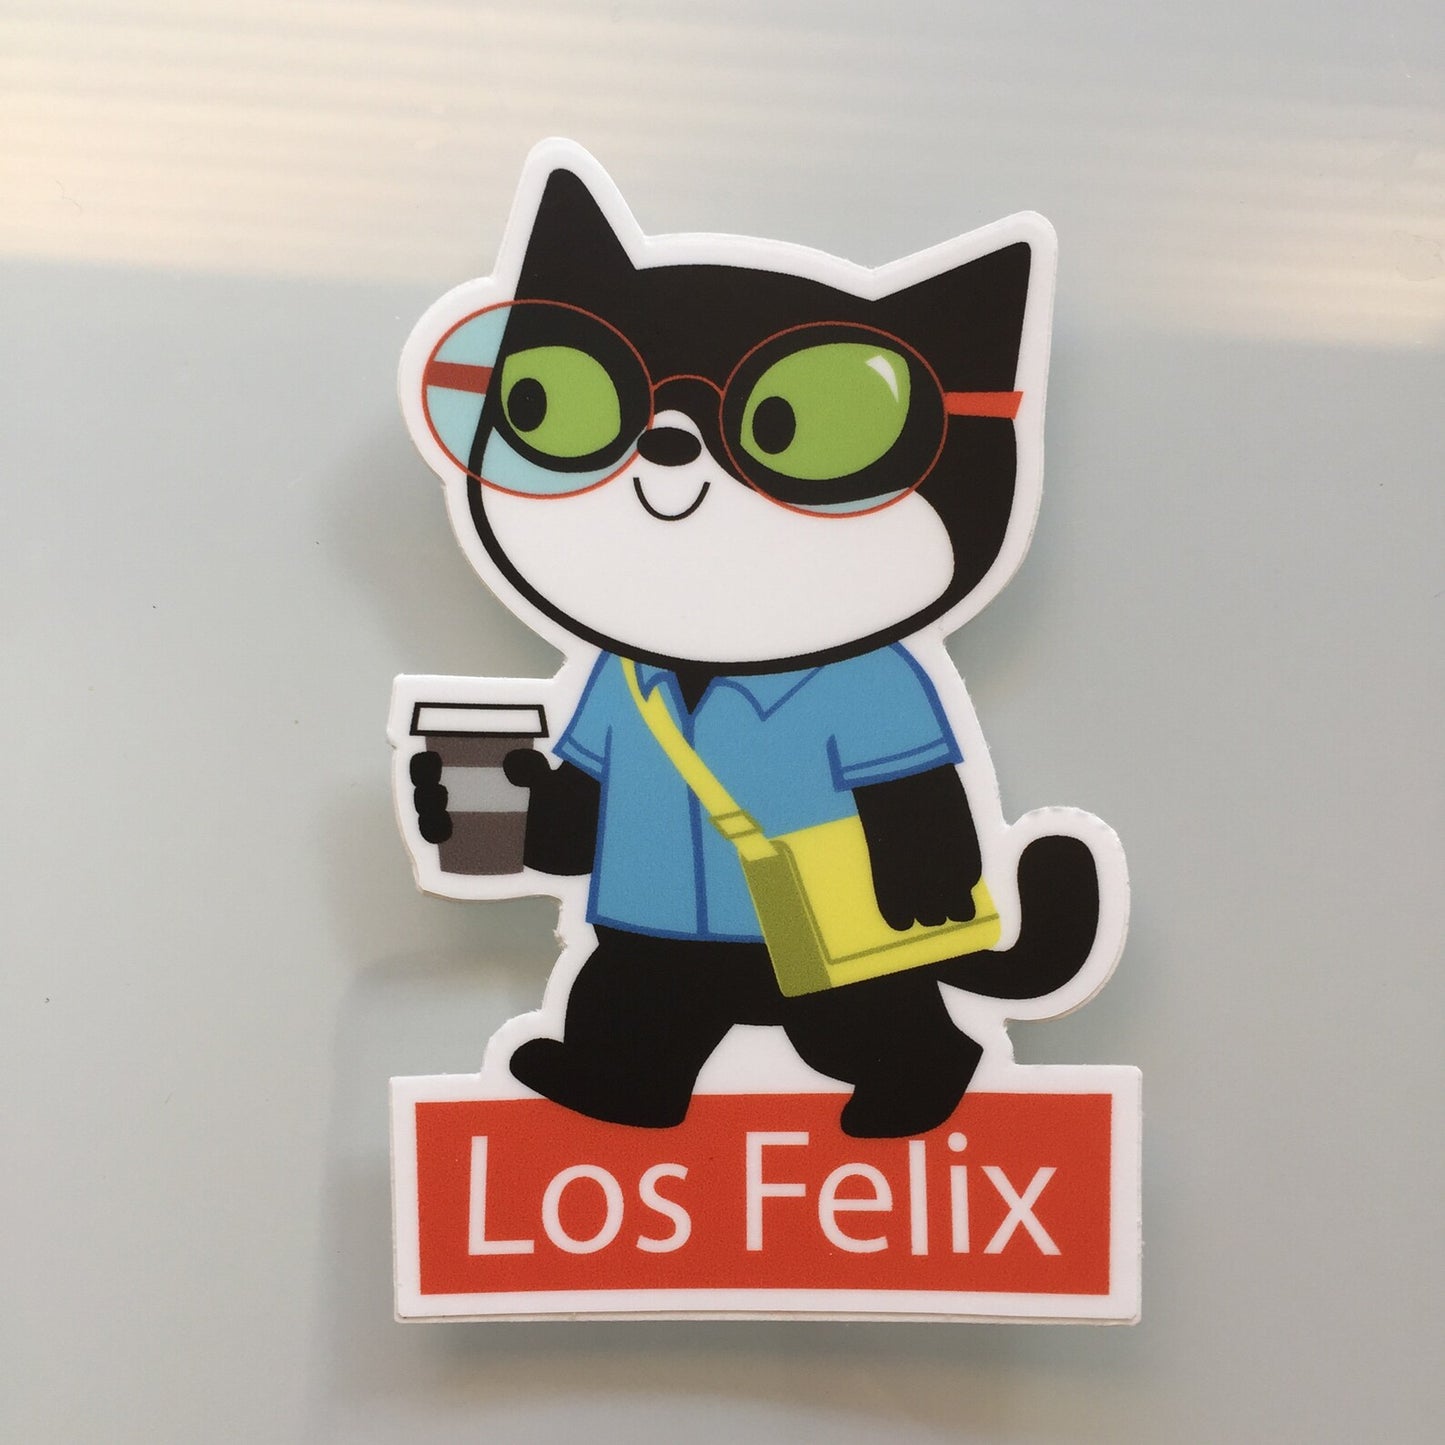 Los Felix, Los Feliz - Hipster cat coffee - LA - STICKERS FOR LAPTOP